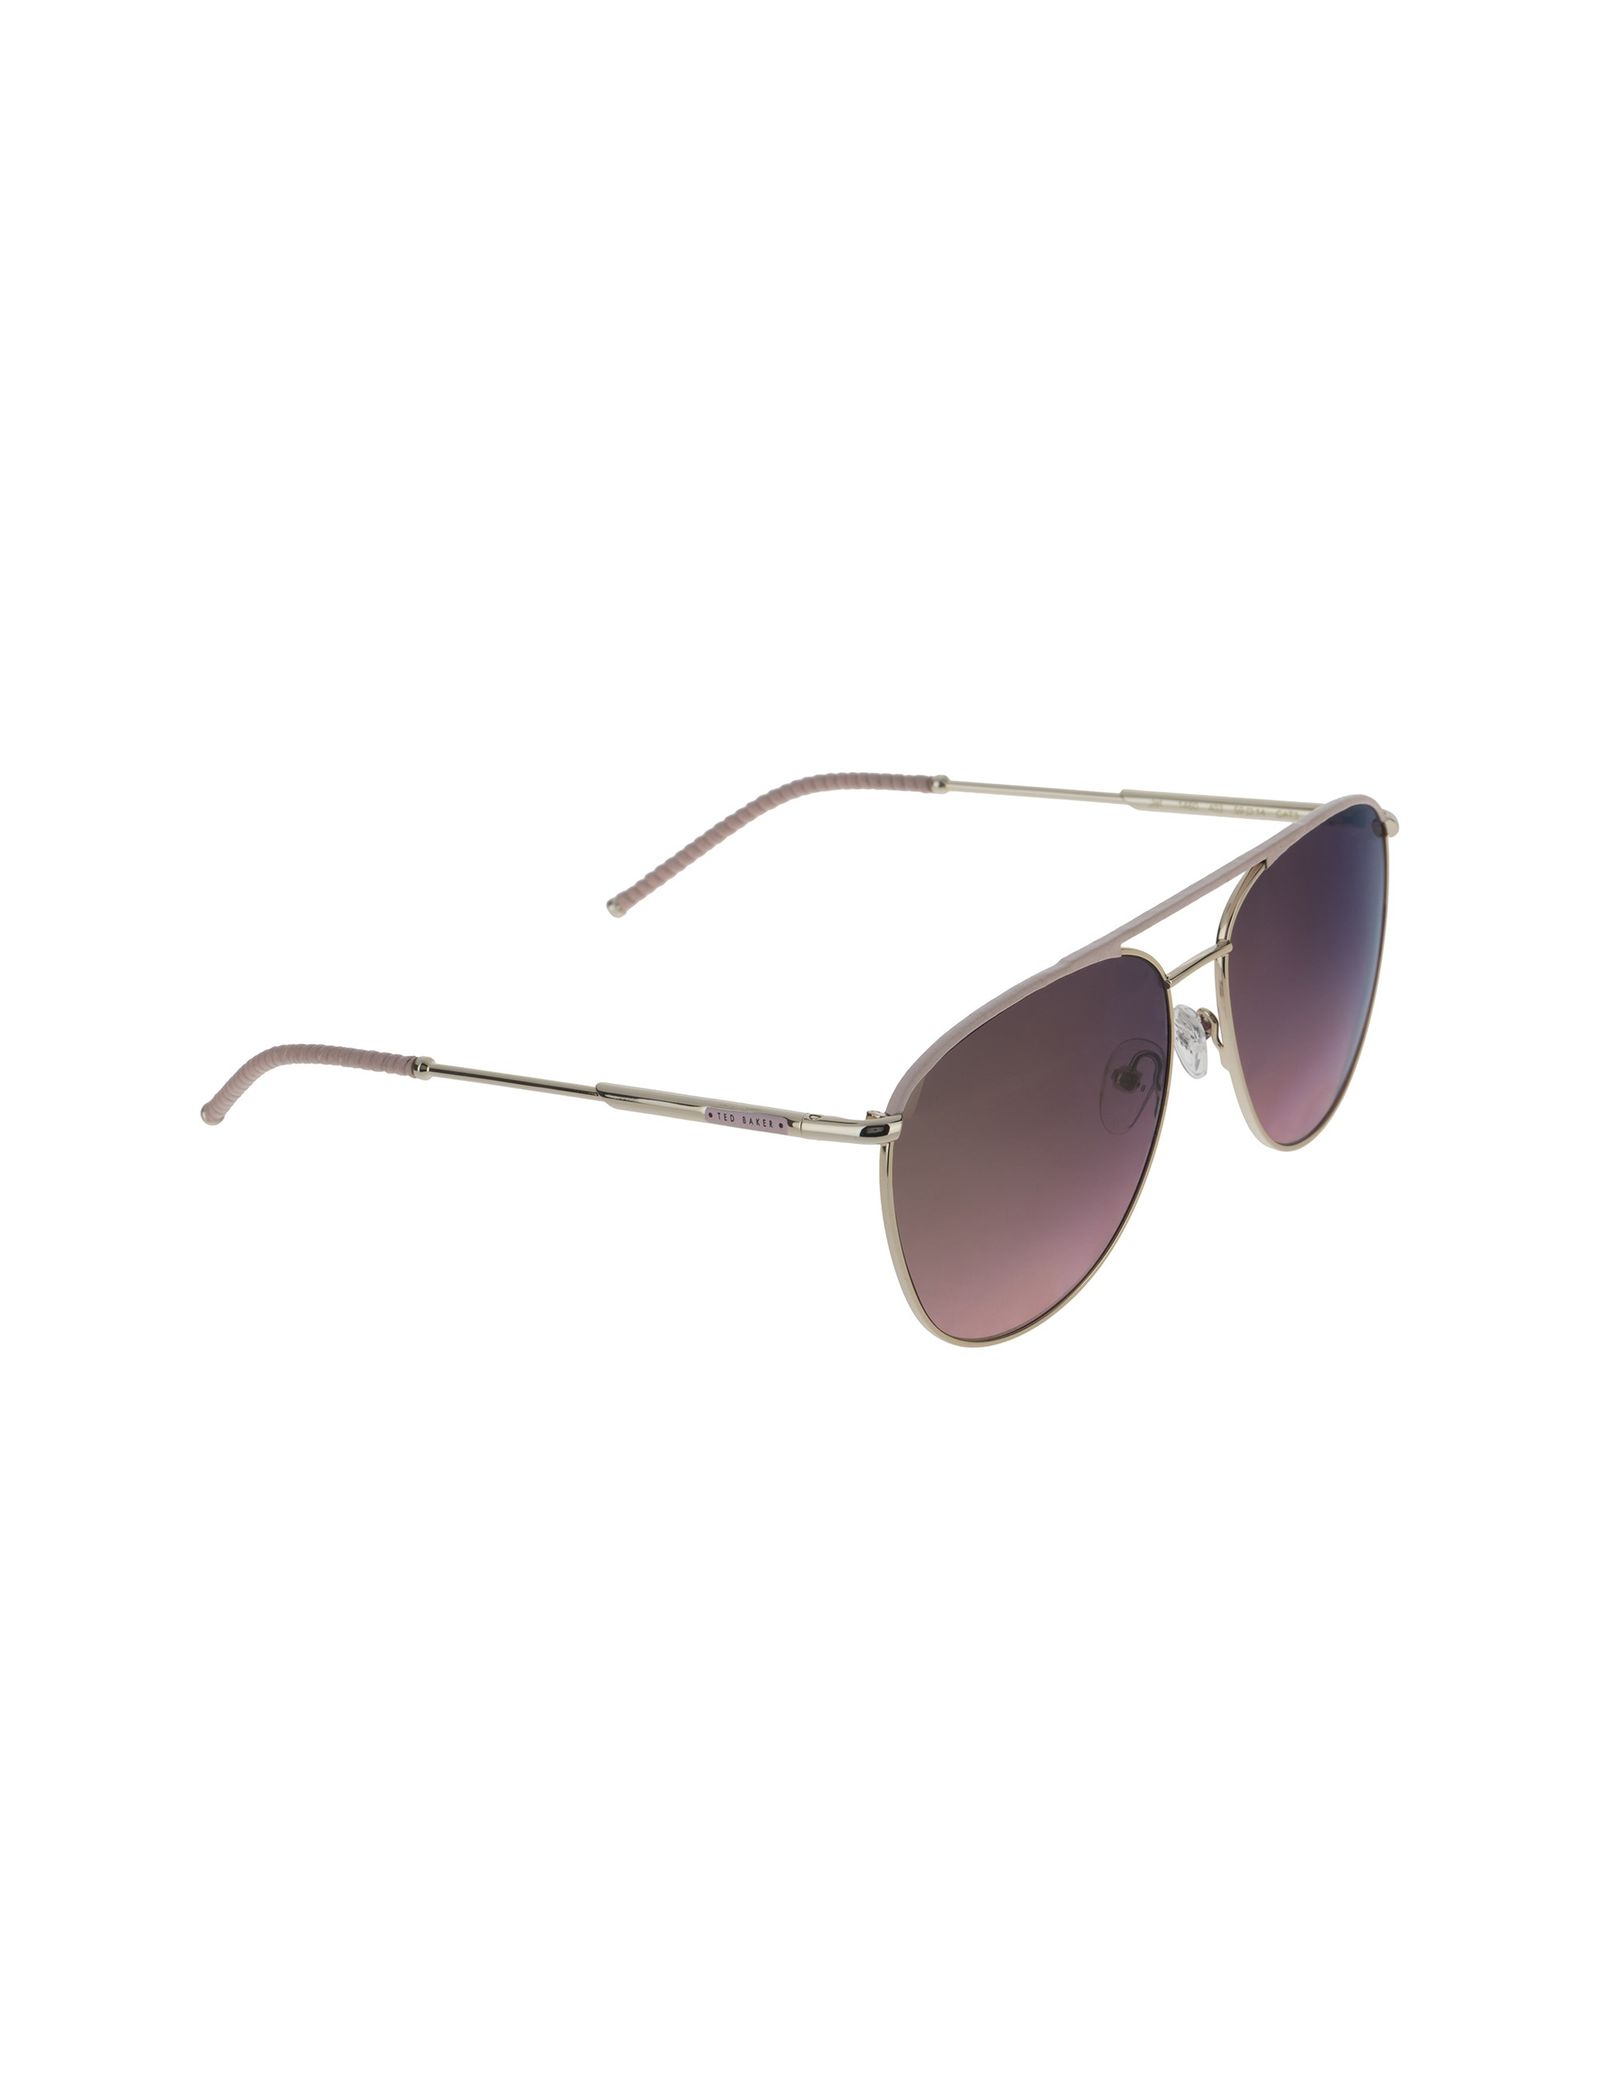 عینک آفتابی خلبانی زنانه - تد بیکر - طلايي و صورتي - 3